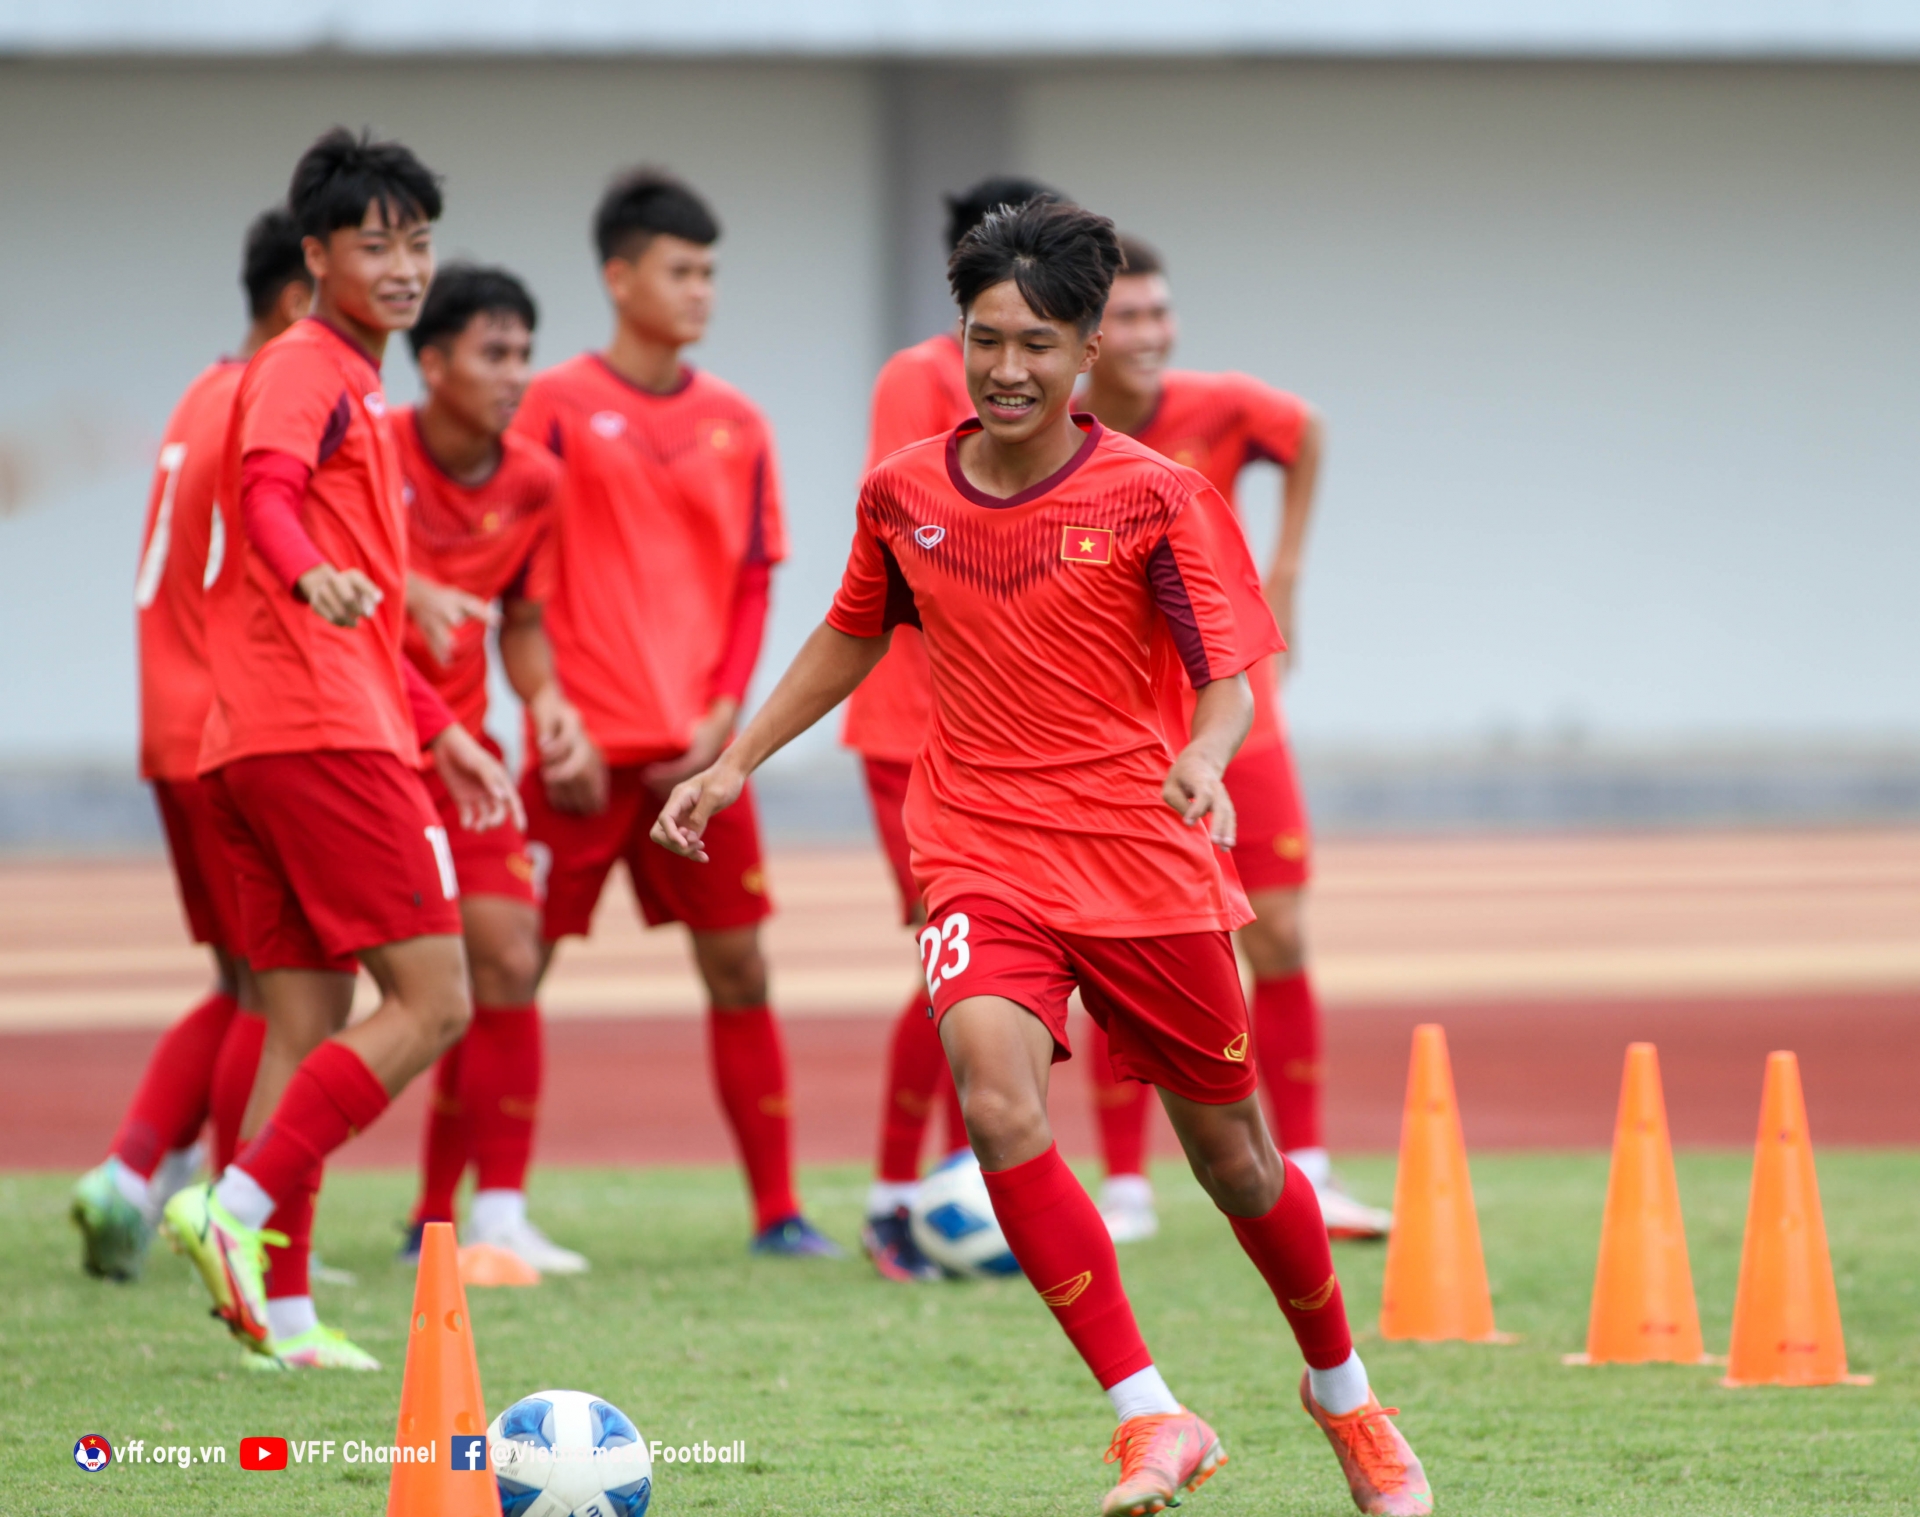 Tiền vệ Thái Lan phát biểu đầy tự tin trước trận bán kết gặp U16 Việt Nam